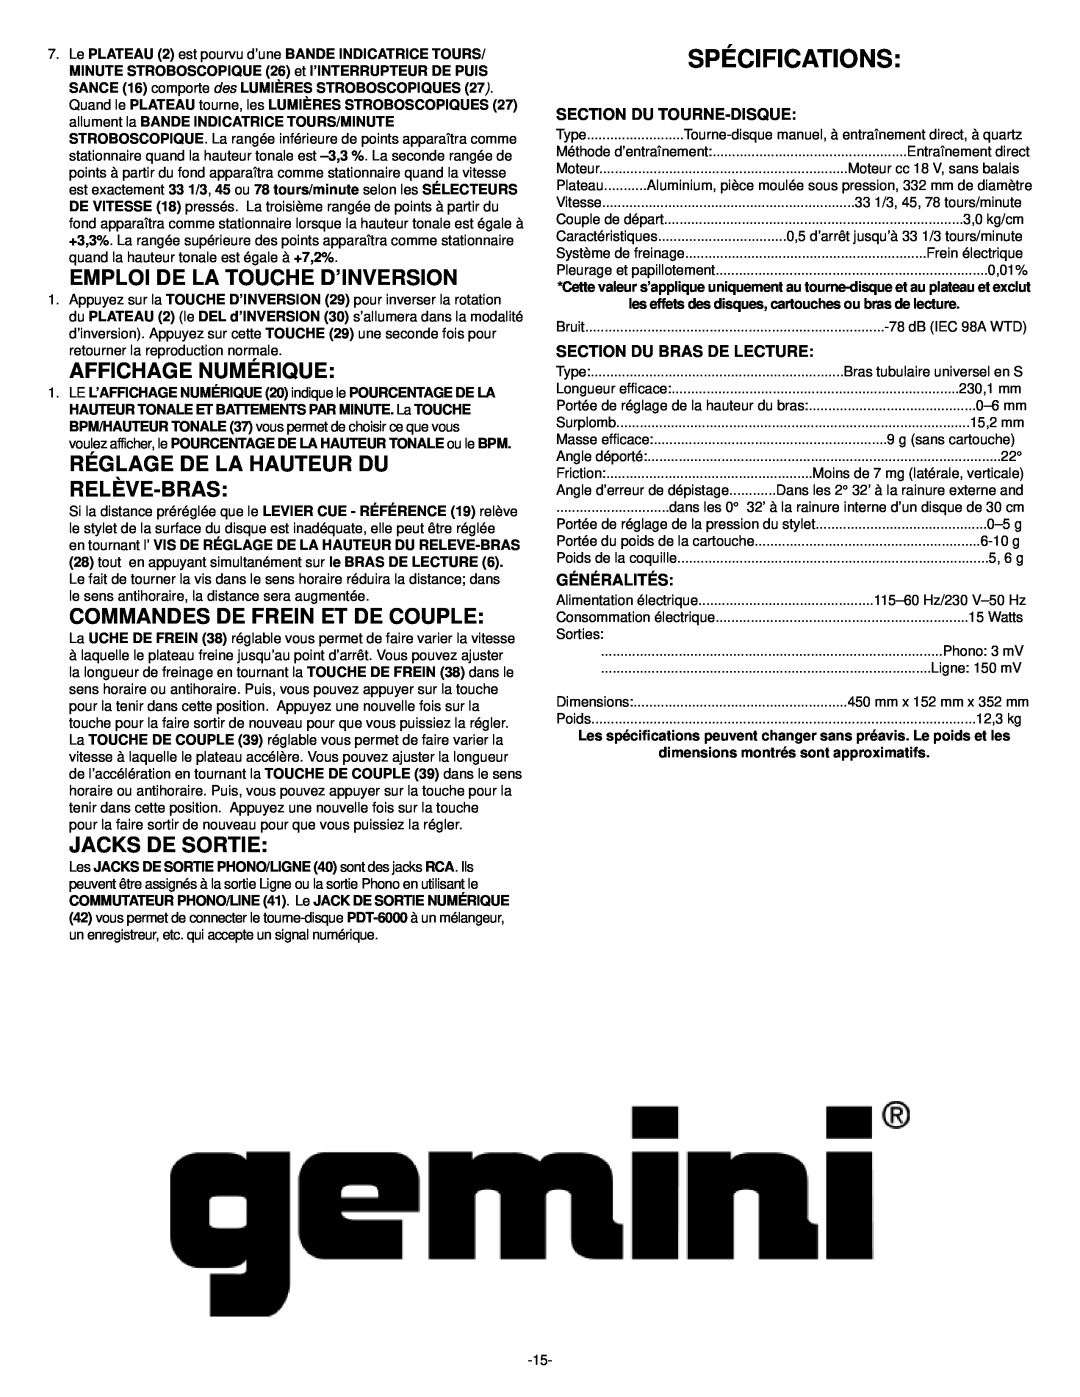 Gemini PDT-6000 Spécifications, Emploi De La Touche D’Inversion, Affichage Numérique, Réglage De La Hauteur Du Relève-Bras 